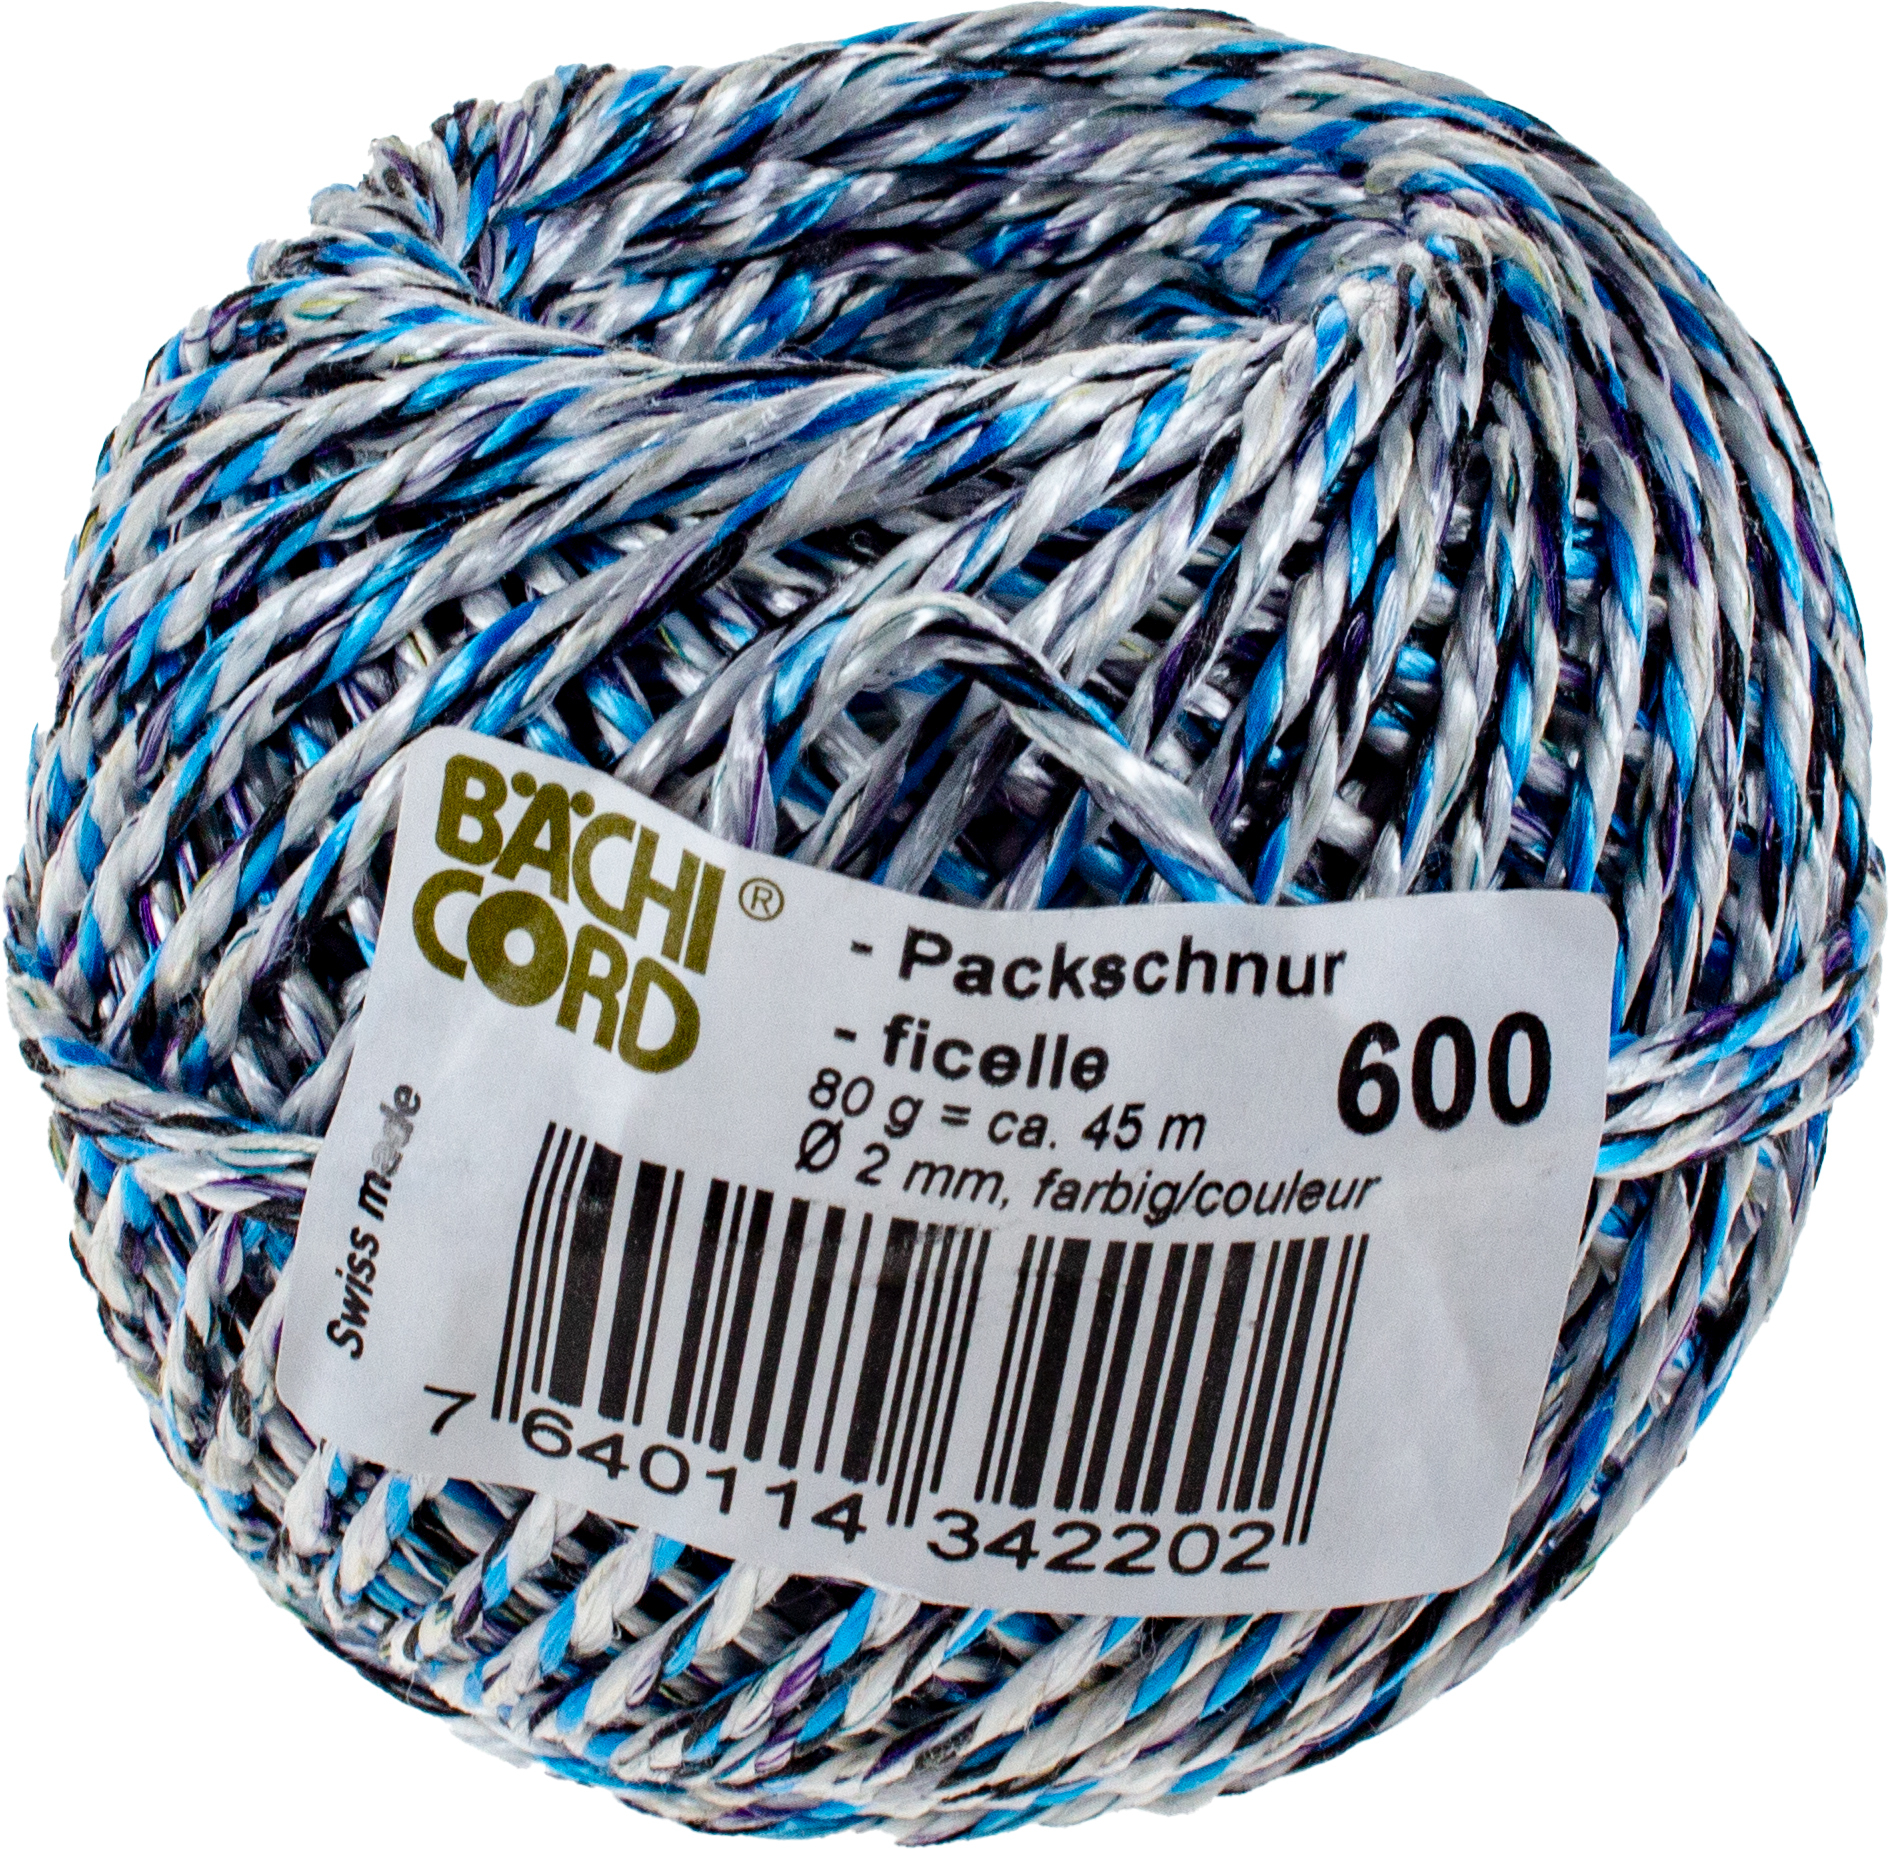 BAECHI Packschnur recycling 110.06019 farbig ass. 45m